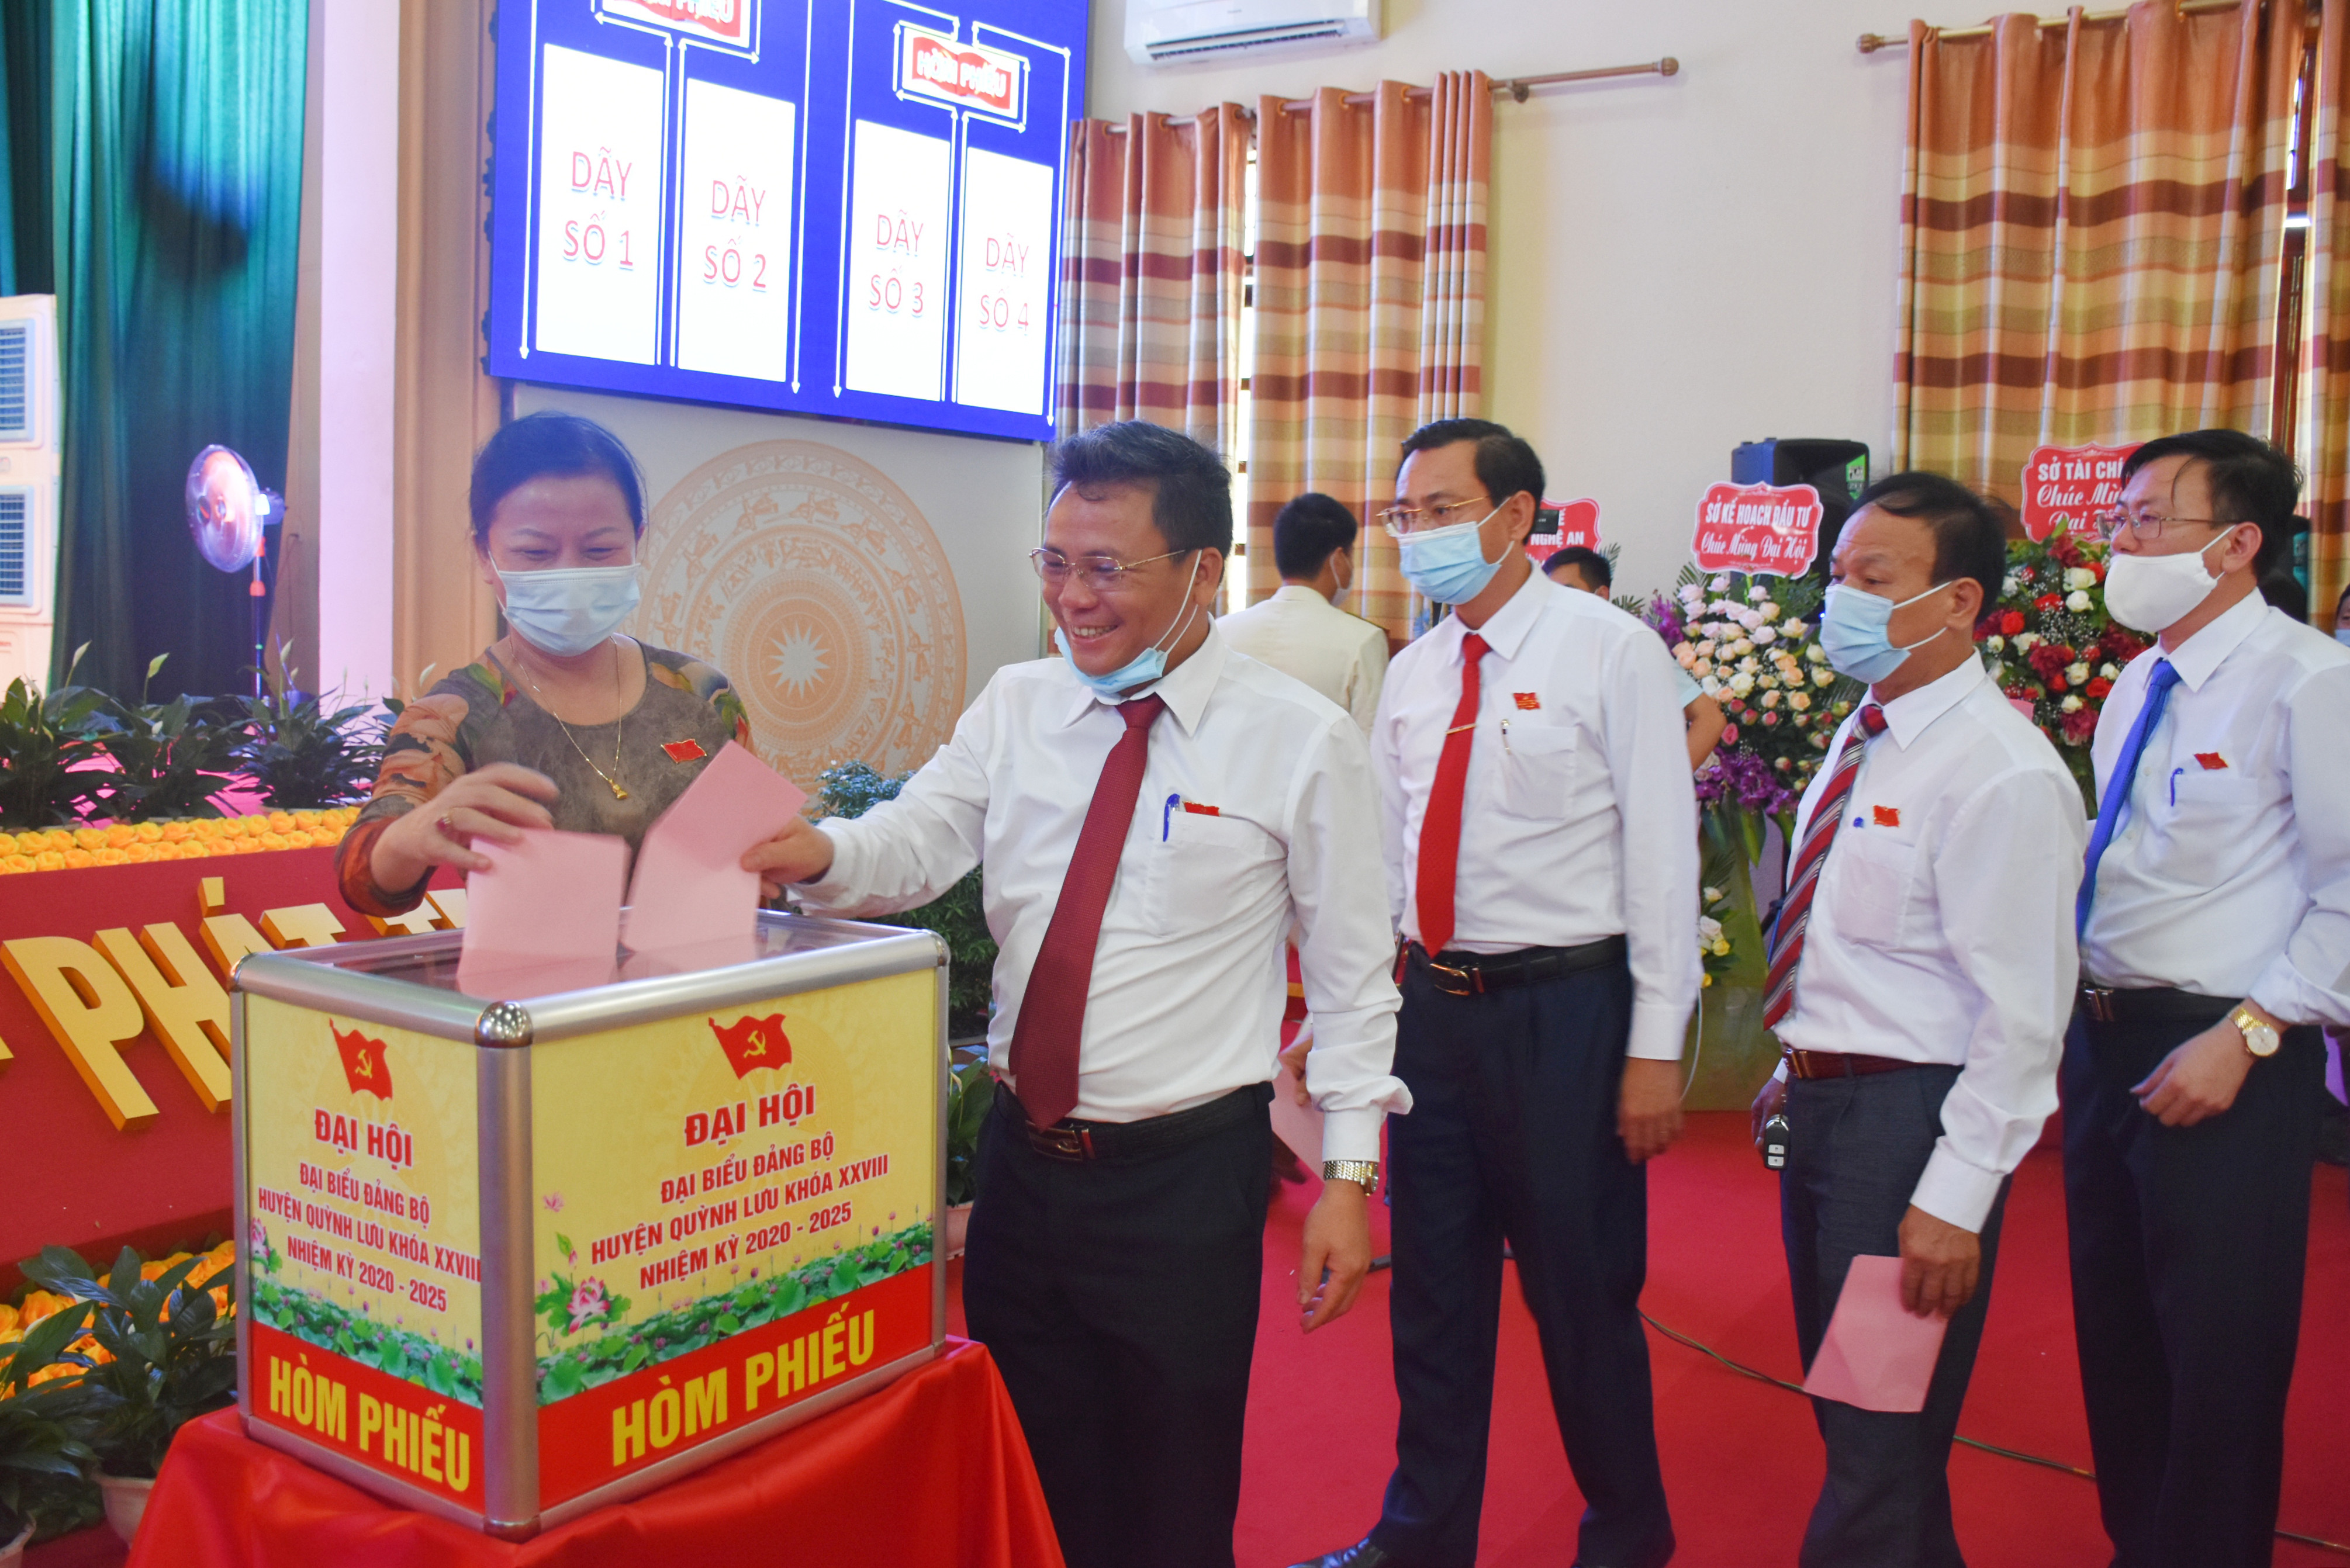 Các đại biểu bỏ phiếu bầu Ban Chấp hành Đảng bộ huyện Quỳnh Lưu lần thứ XXVIII, nhiệm kỳ 2020-2025. Ảnh: Thanh Lê